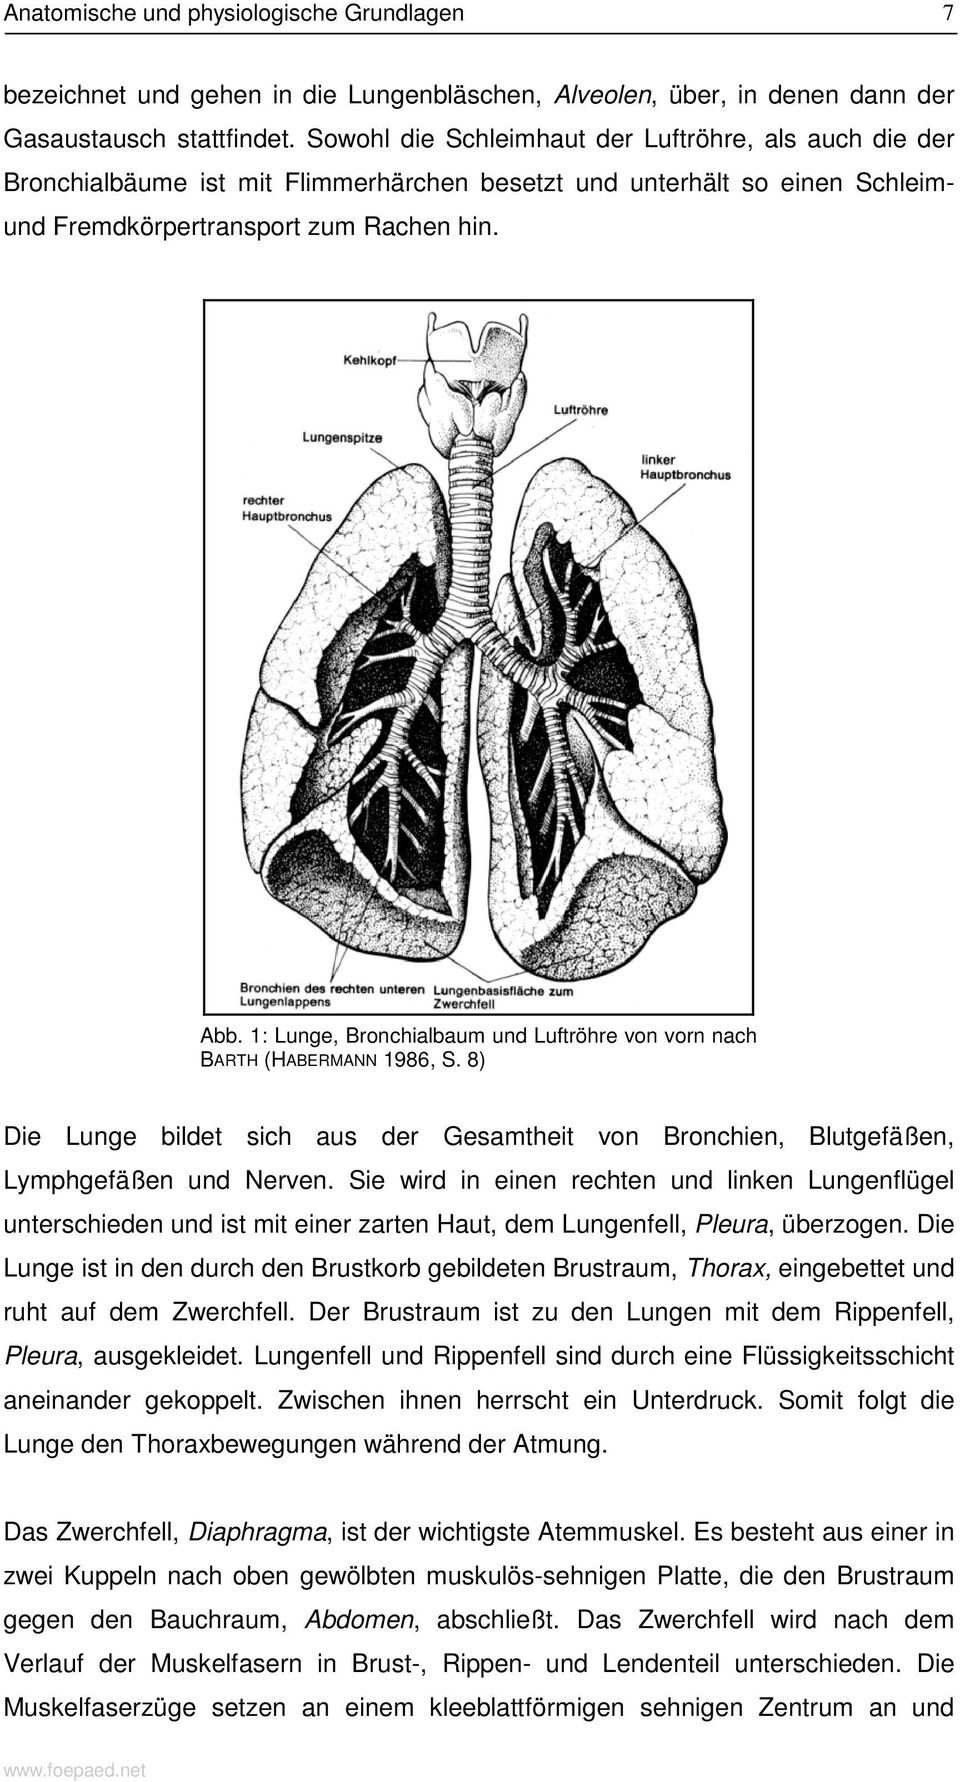 1: Lunge, Bronchialbaum und Luftröhre von vorn nach BARTH (HABERMANN 1986, S. 8) Die Lunge bildet sich aus der Gesamtheit von Bronchien, Blutgefäßen, Lymphgefäßen und Nerven.